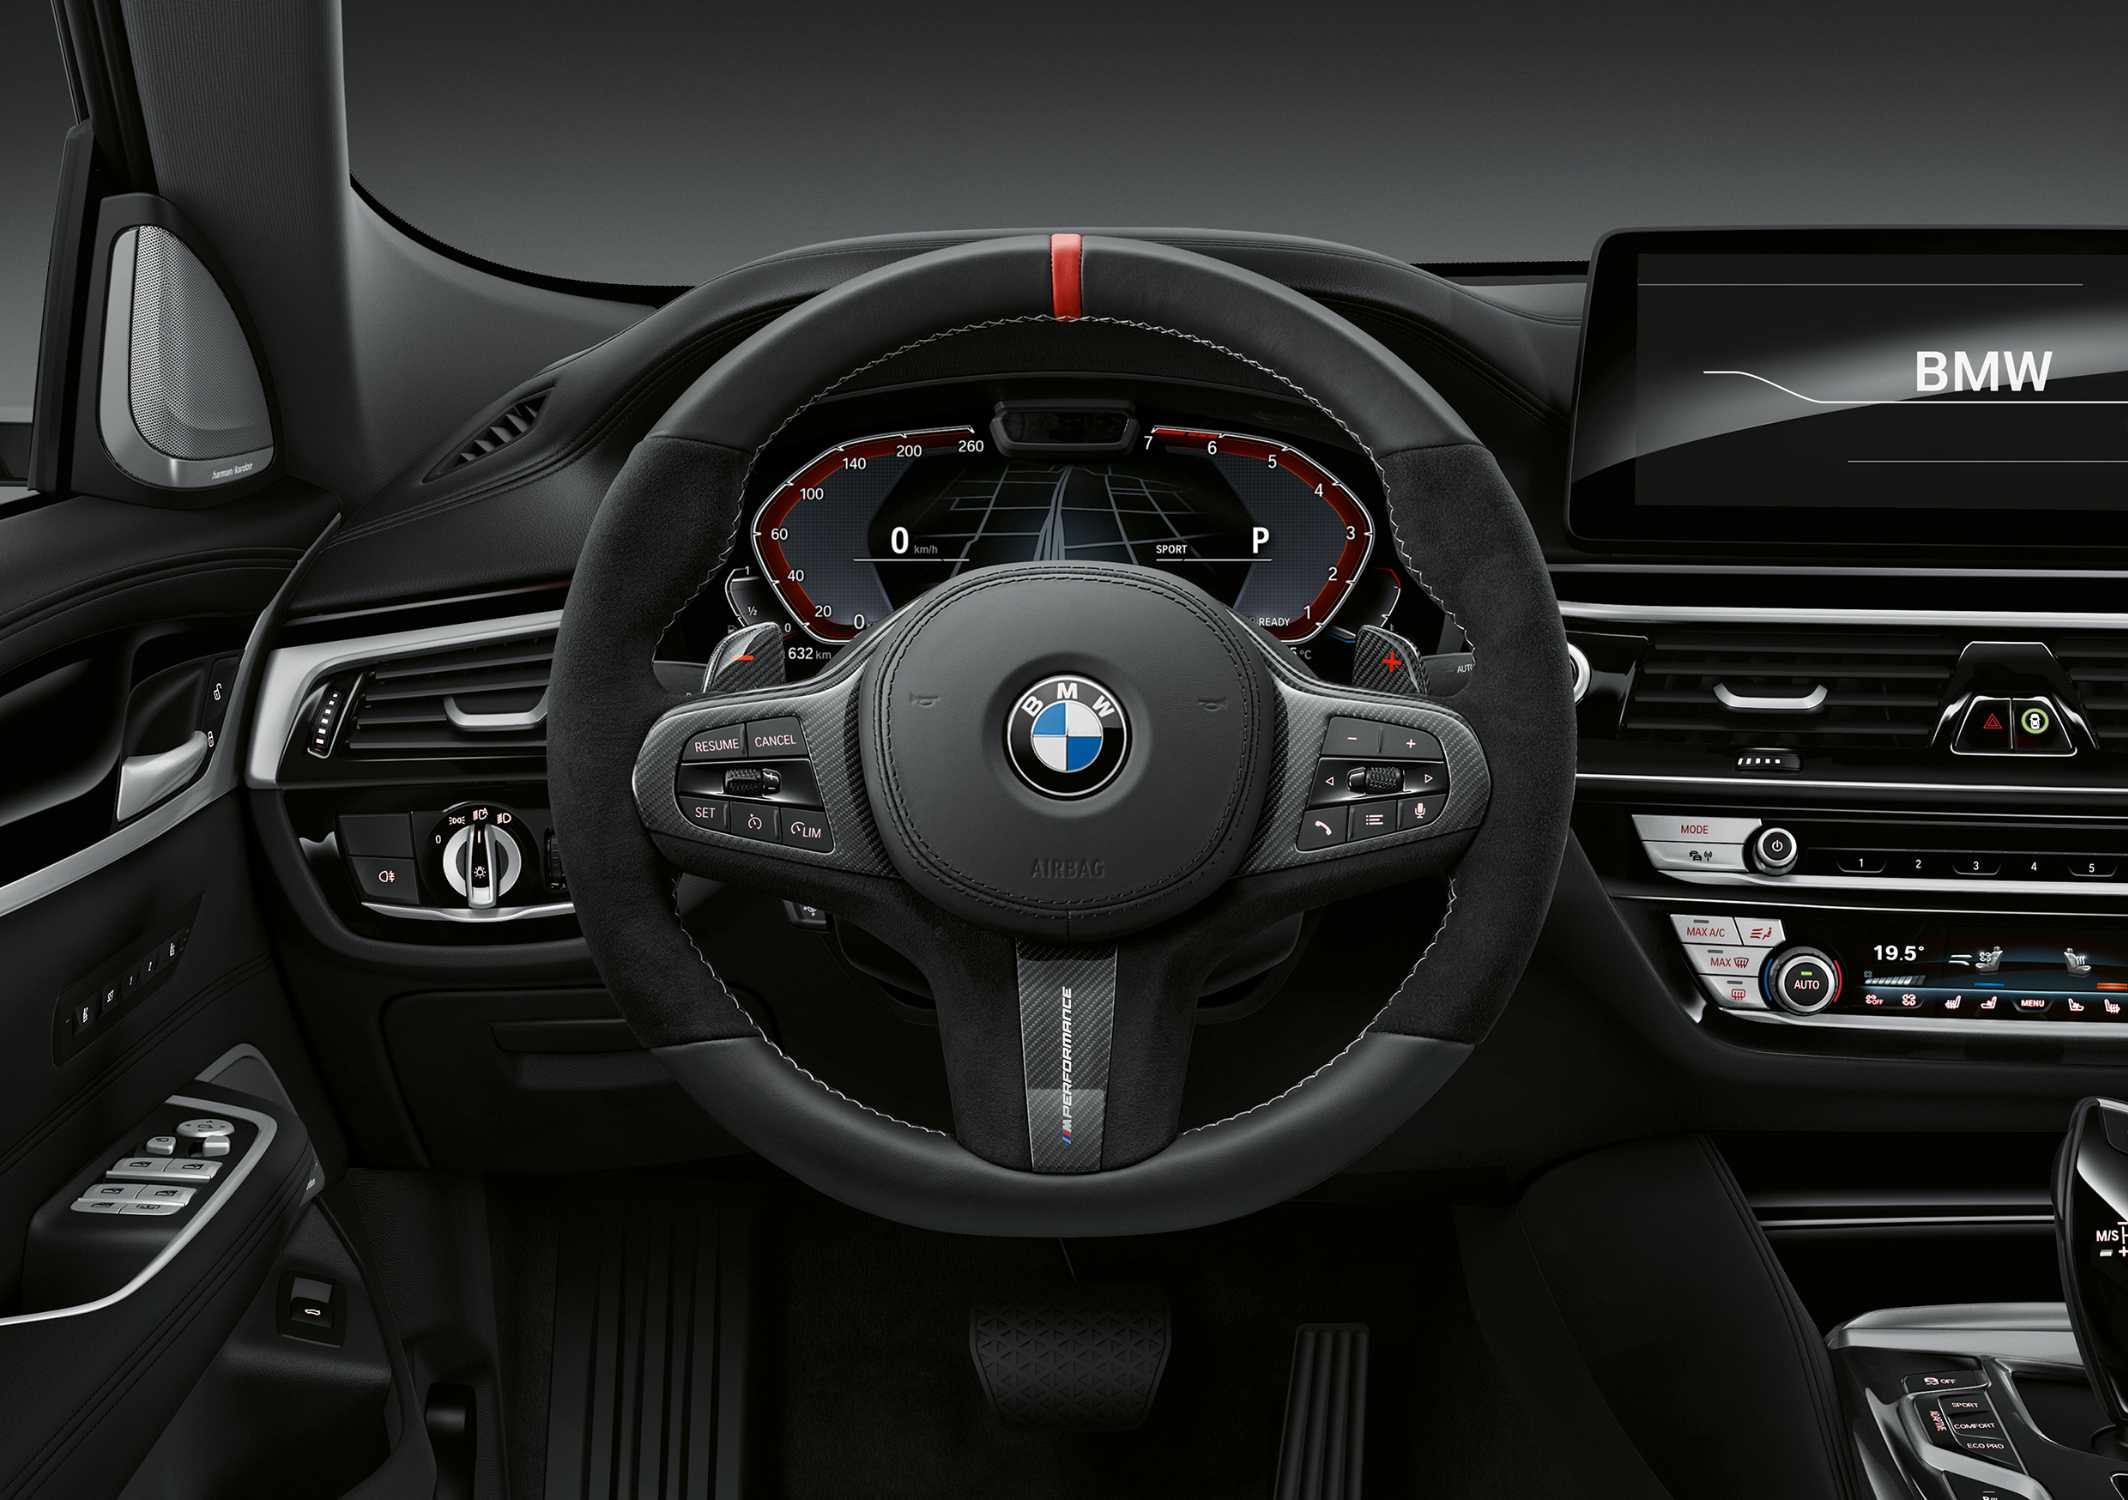 Автомобили BMW получили функцию оповещения о камерах на дорогах. Она работает и в России